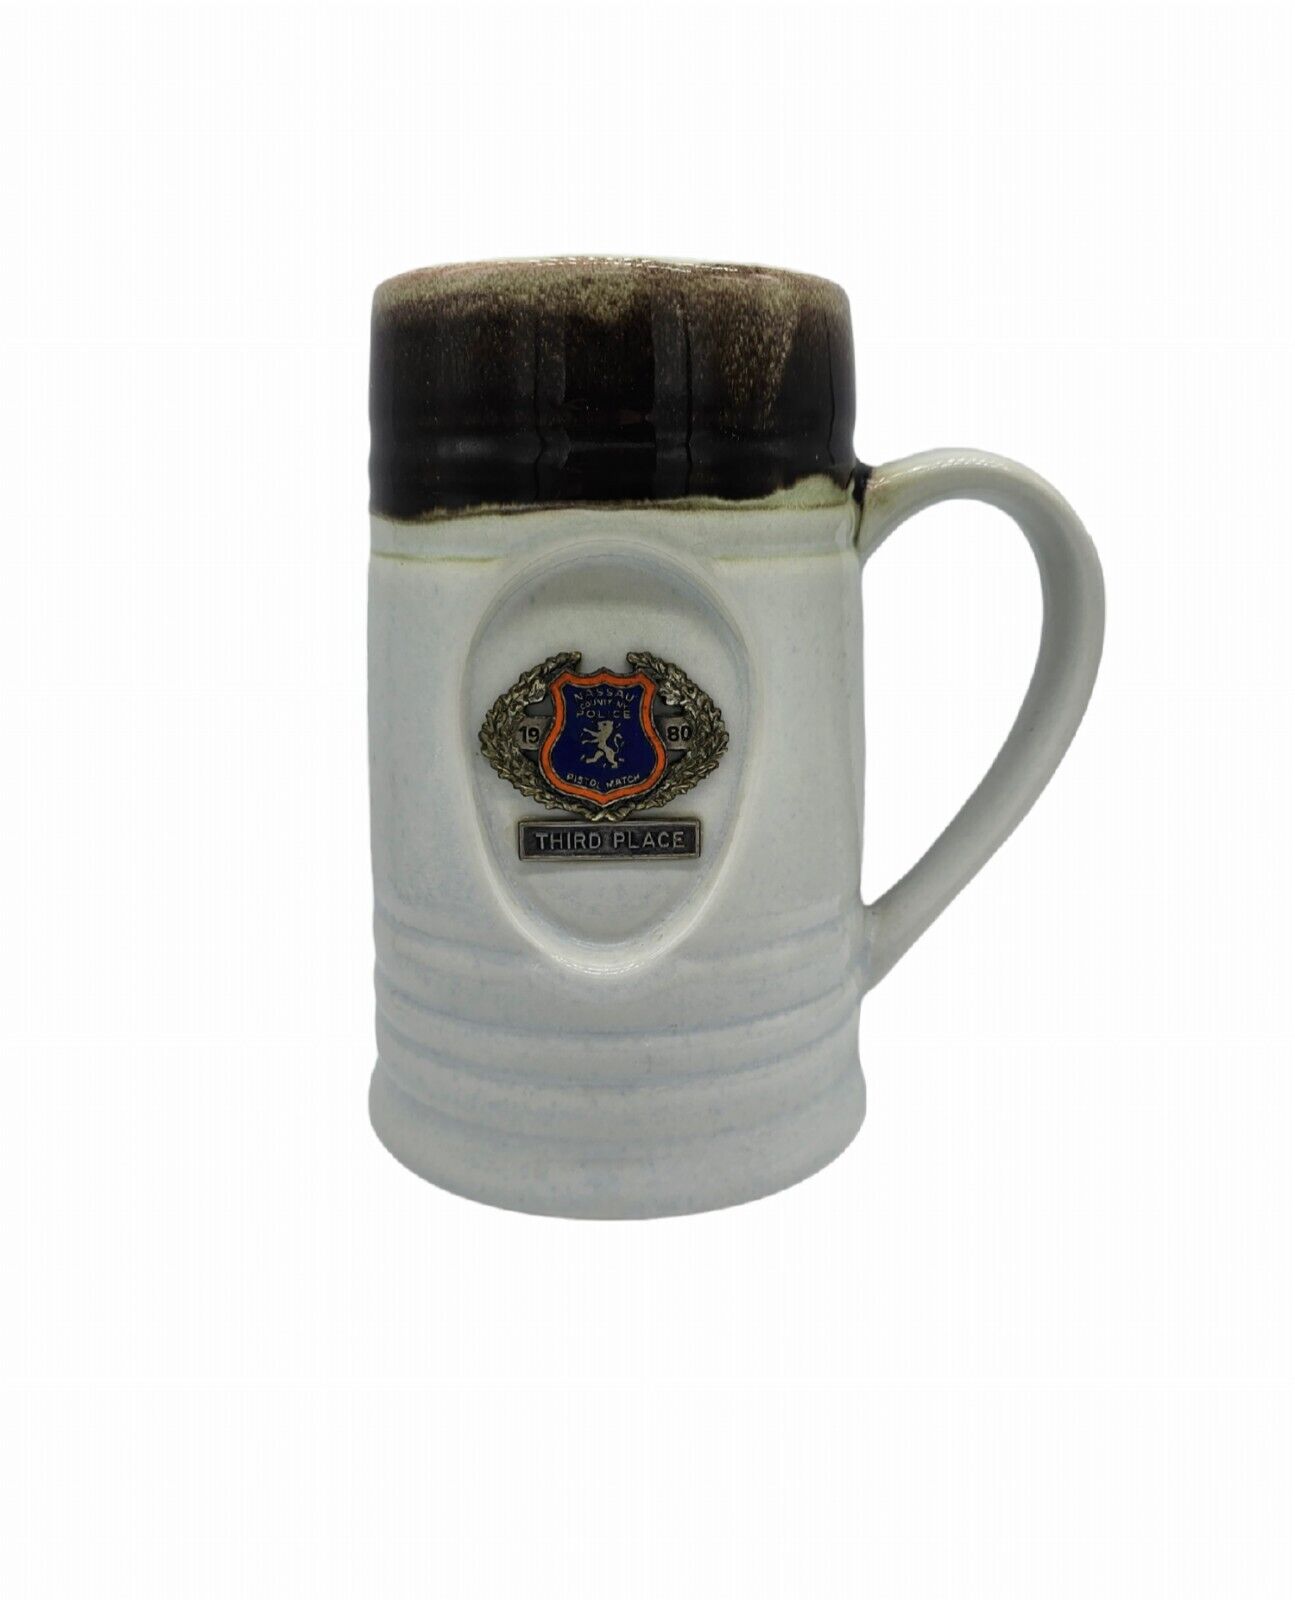 Nassau County NY Police Pistol Match 3rd Place Trophy Mug 1980 Vintage